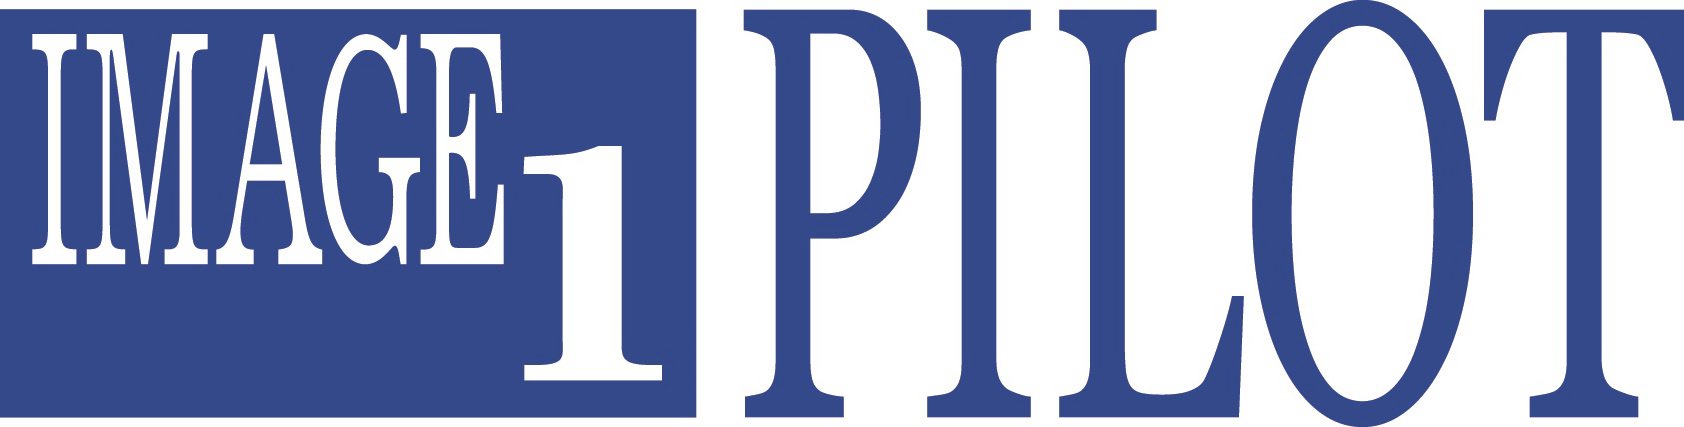 Trademark Logo IMAGE 1 PILOT